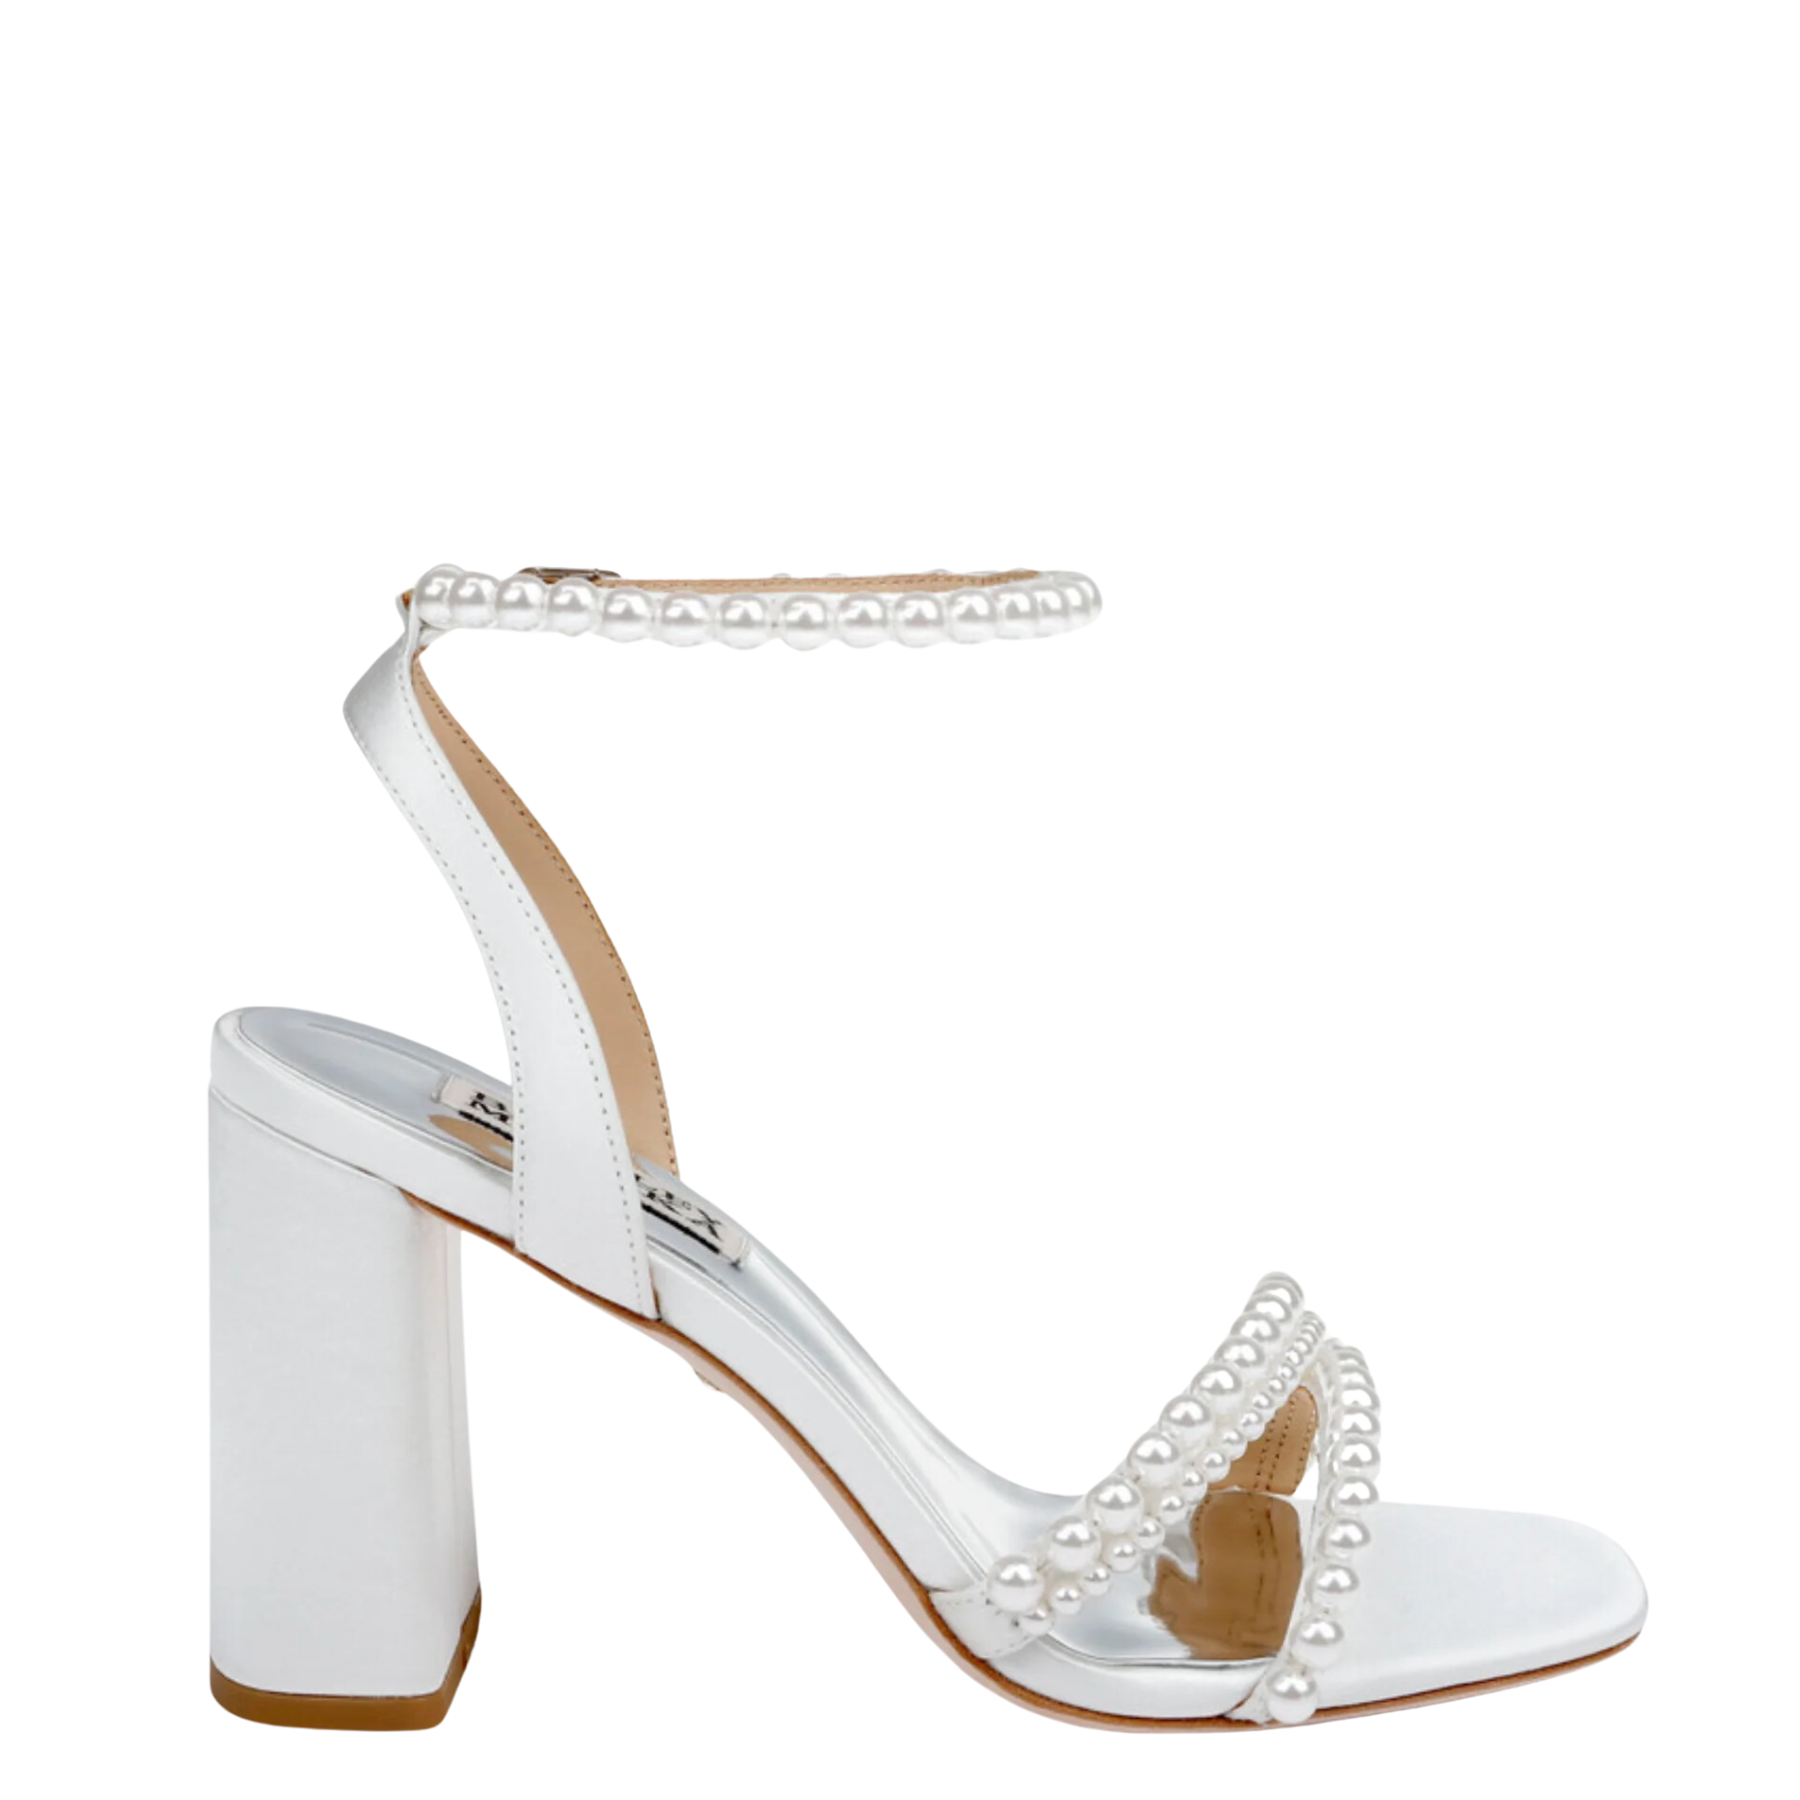 ZKPE WHITE High Heels | Buy Women's HEELS Online | Novo Shoes NZ